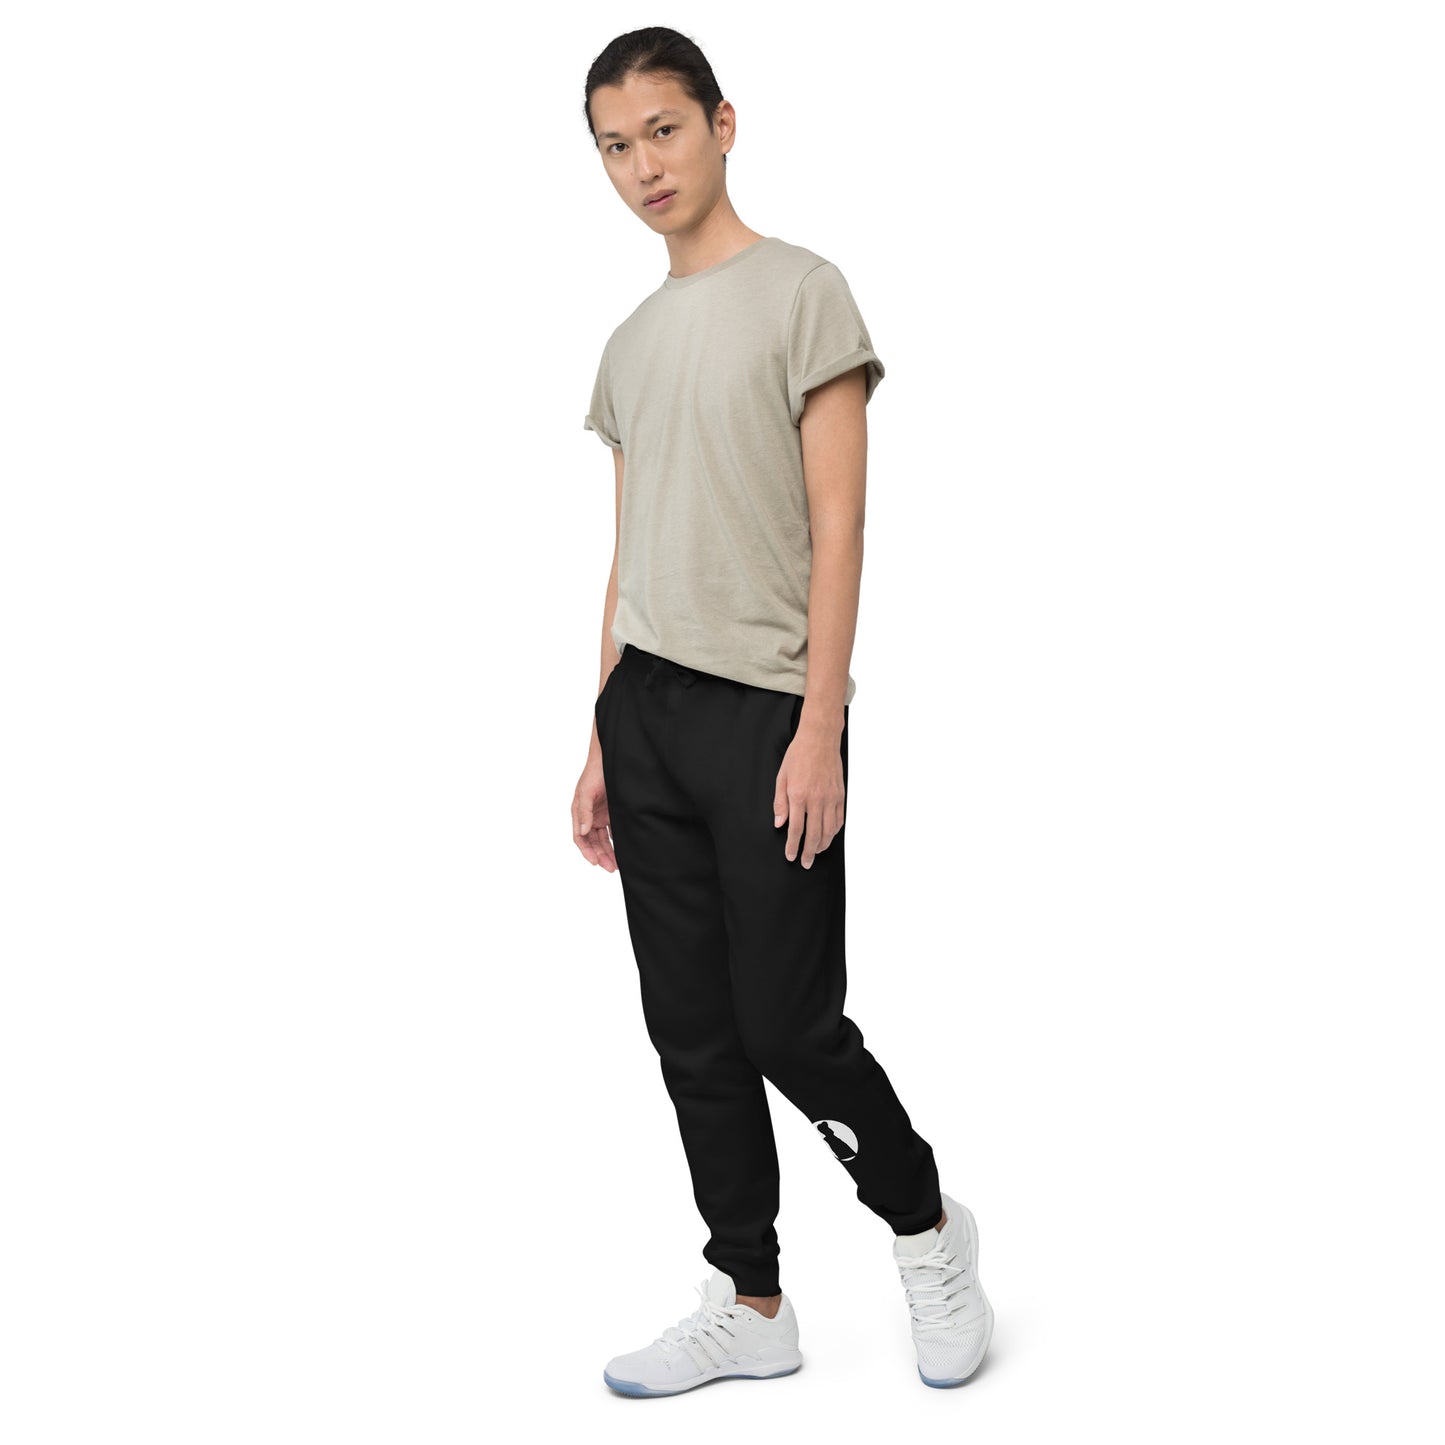 Super DJ Emiliot Unisex Fleece Sweatpants: Cozy Style for All